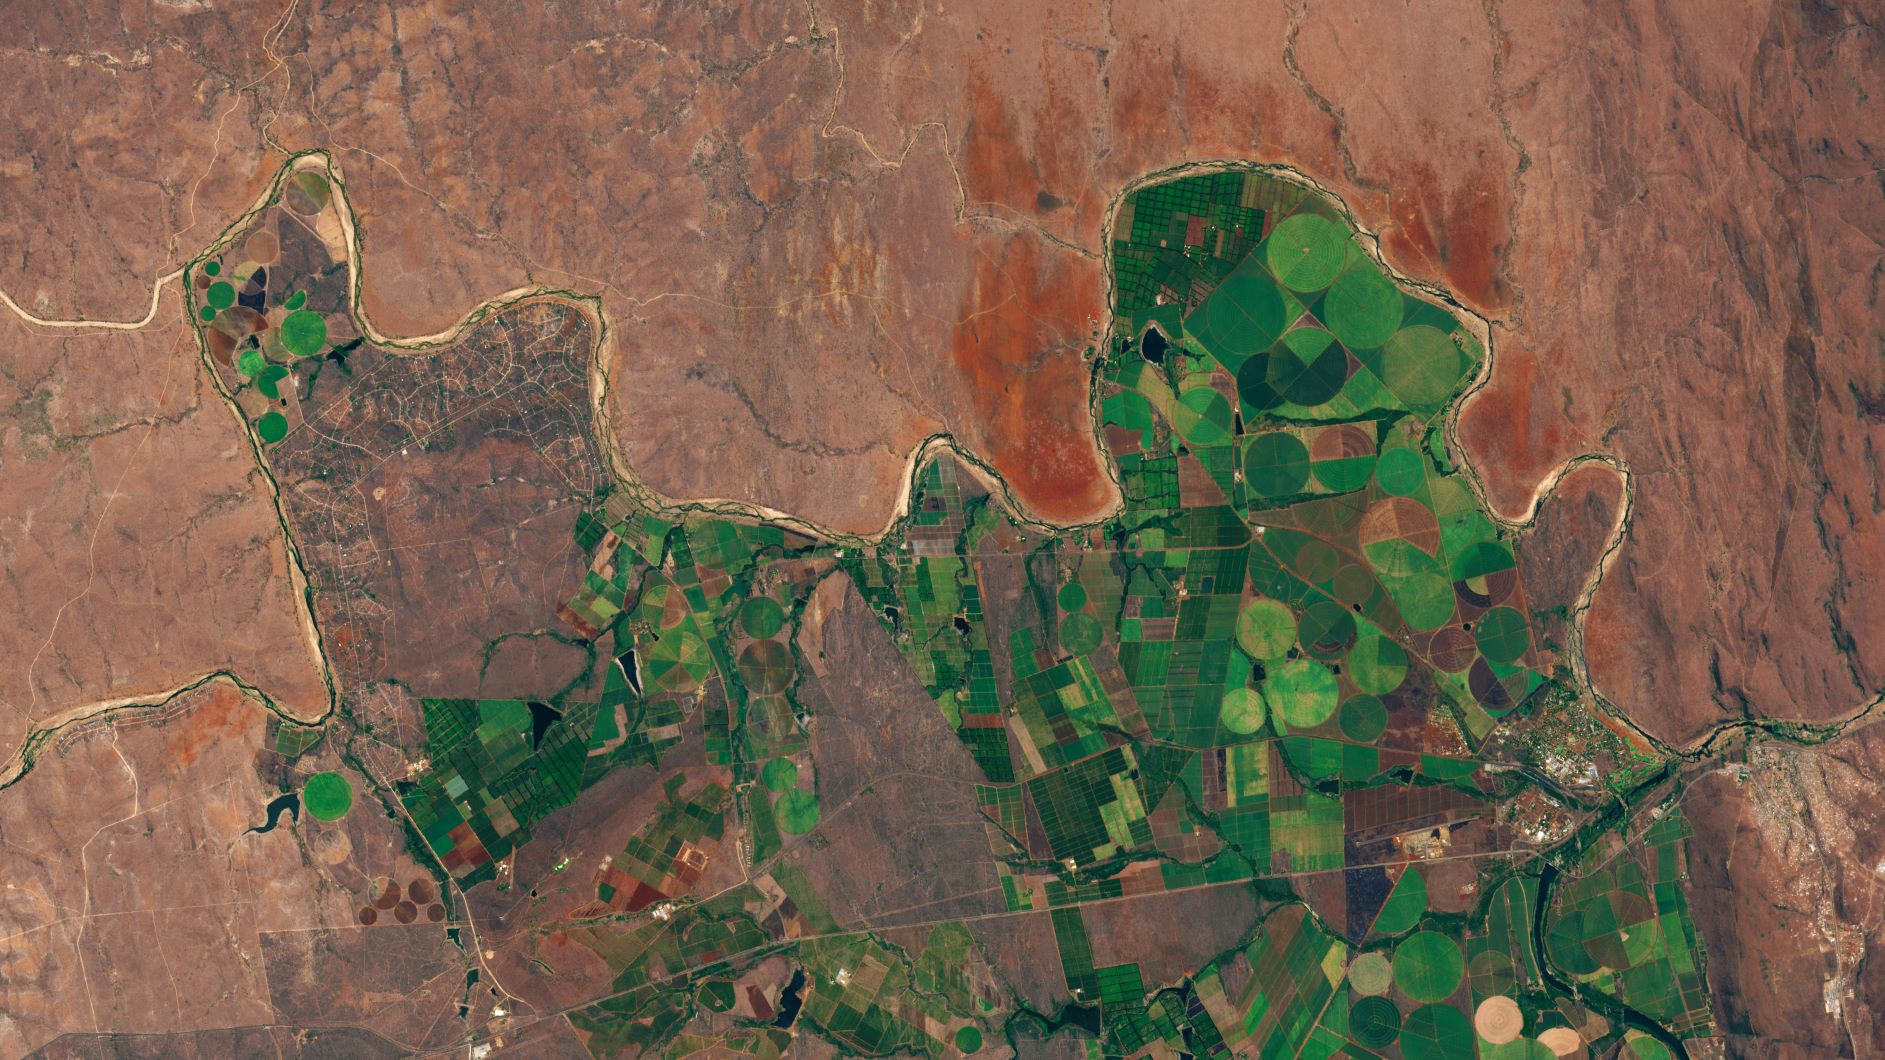 Zdjęcia satelitarne w misji zrównoważonego rozwoju Ziemi